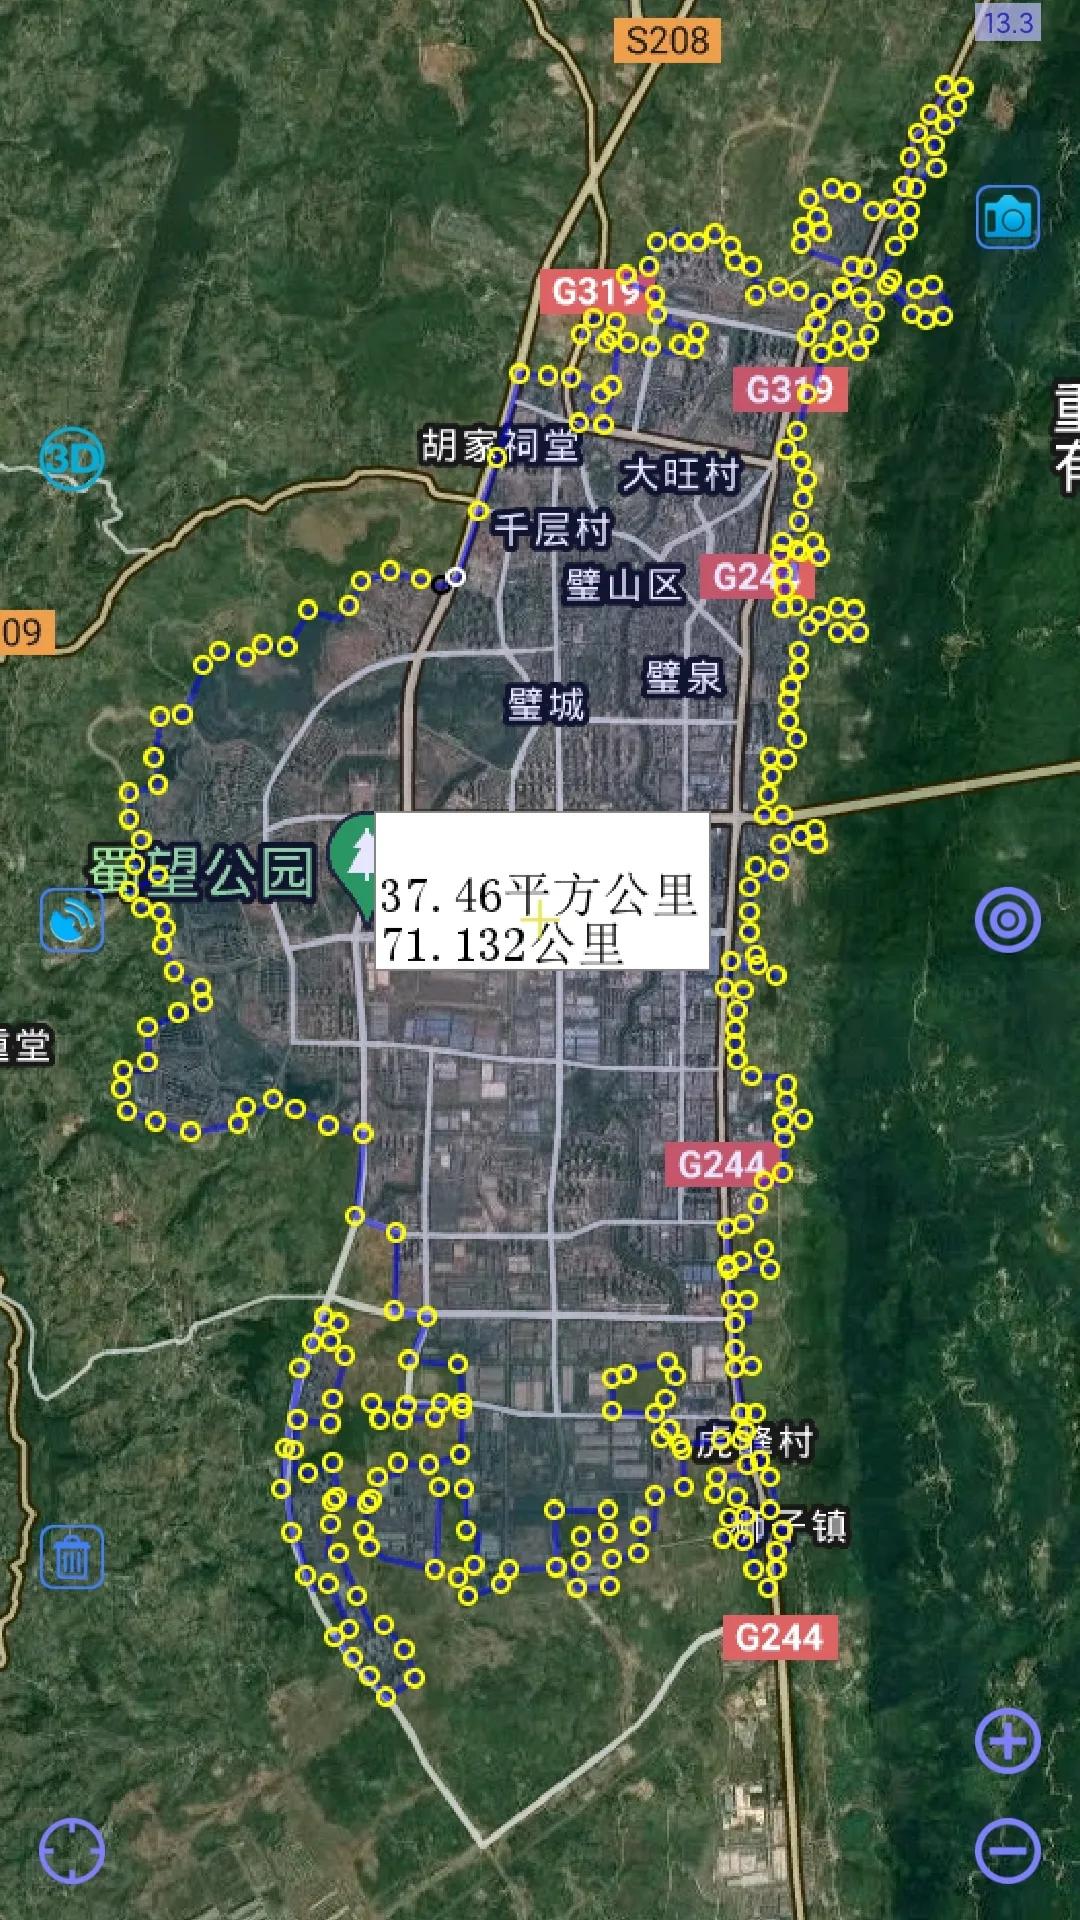 城市建成区测量-重庆篇-璧山